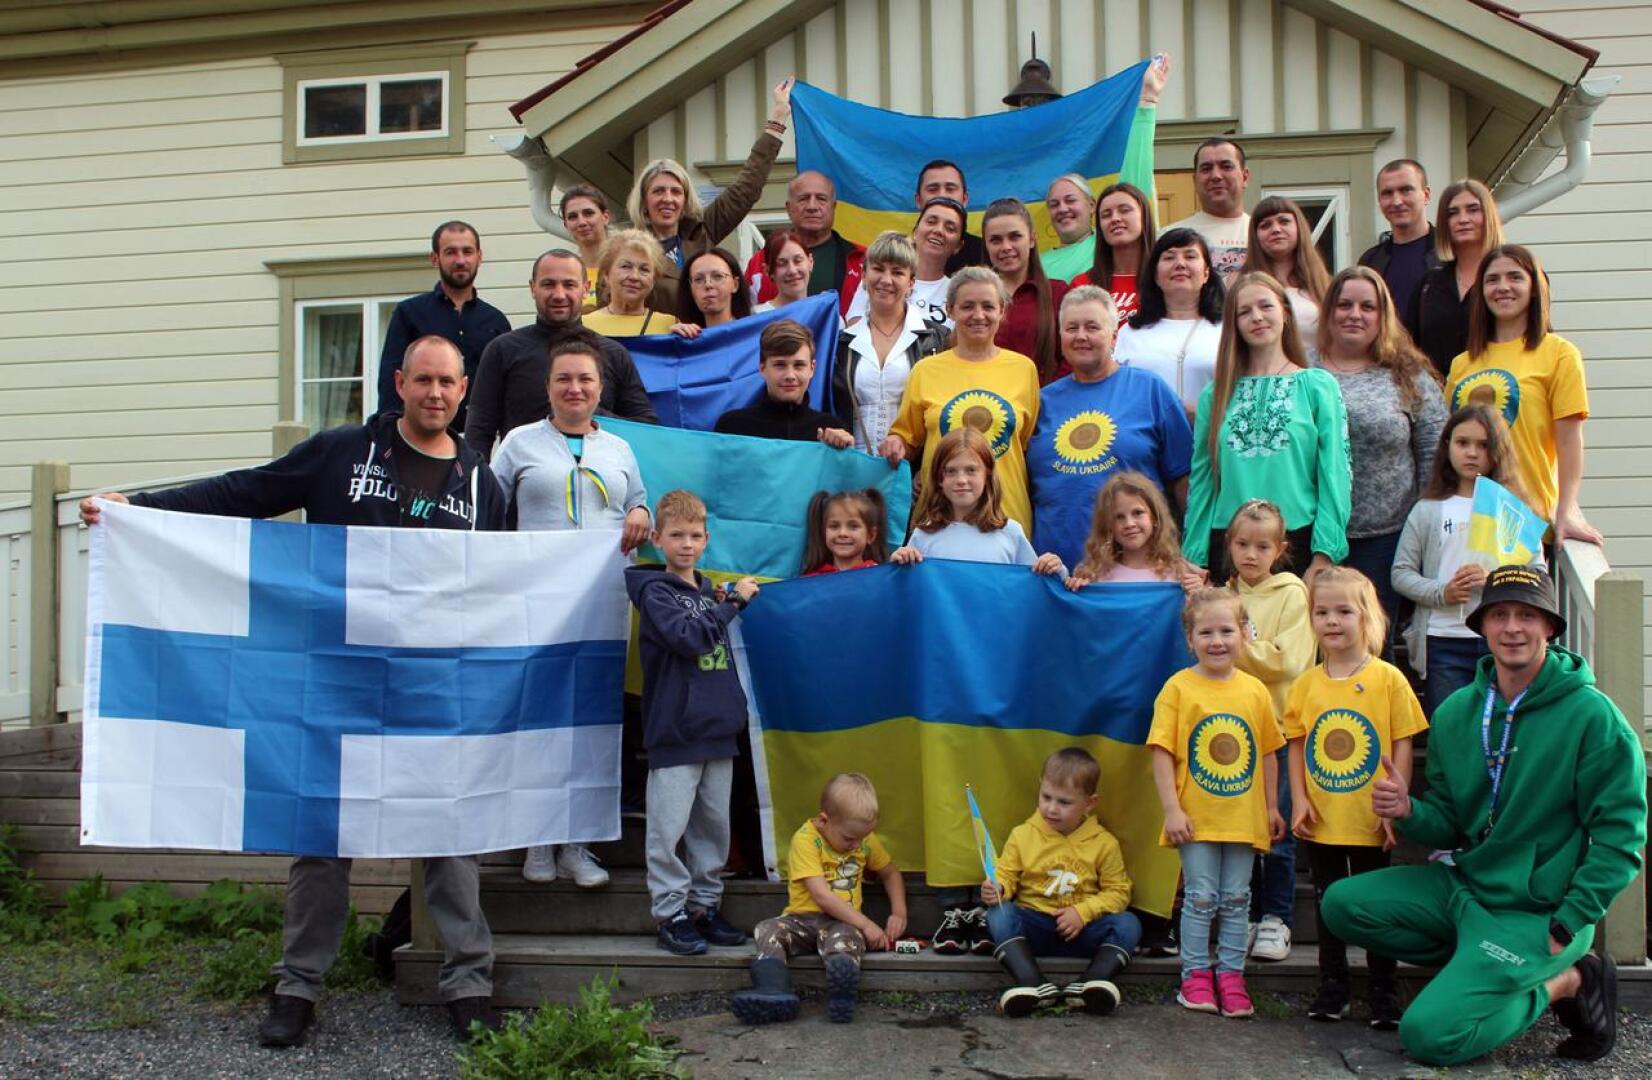 Keskiviikkoiltana ukrainalaiset viettivät Ventelässä vapaamuotoista itsenäisyyspäivää jutellen ja toisiinsa tutustuen. Tarjolla oli myös hyvää ruokaa ja ukrainalaista musiikkia. Tilaisuutta juhlistivat Ukrainan ja Suomen liput.